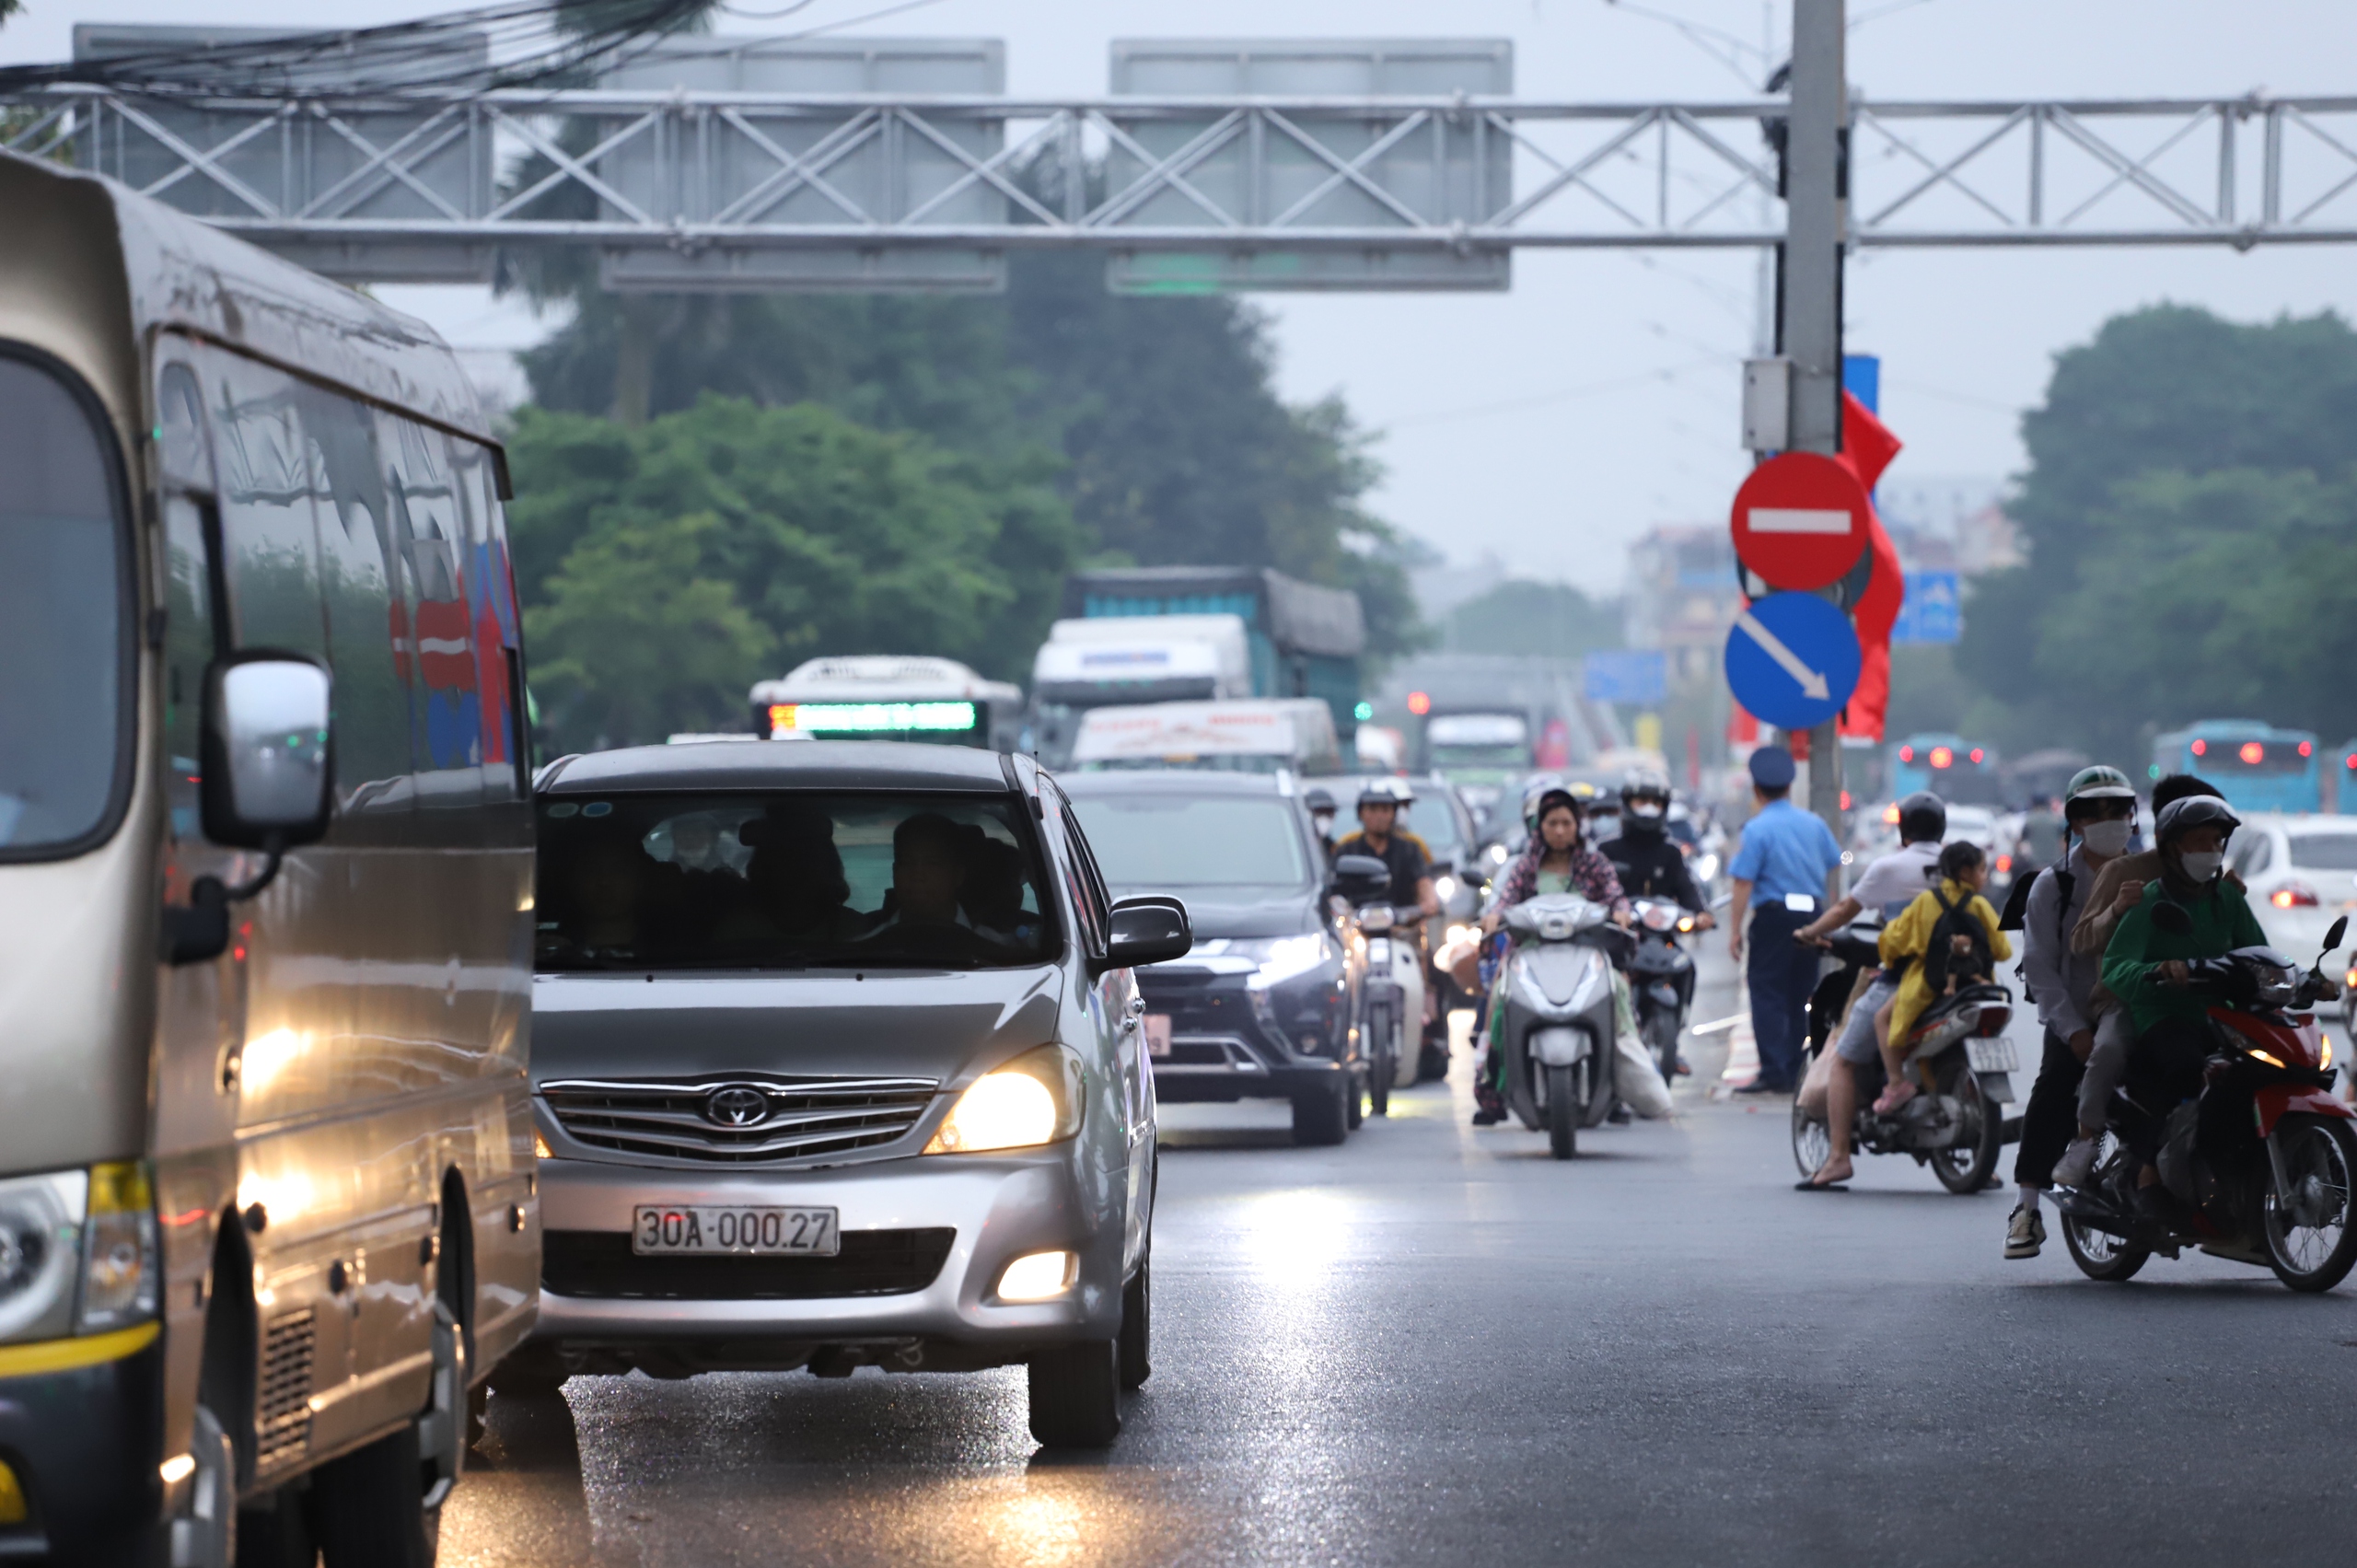 Bất ngờ tình hình giao thông tại Hà Nội vào ngày cuối nghỉ lễ 30/4 - 1/5- Ảnh 12.